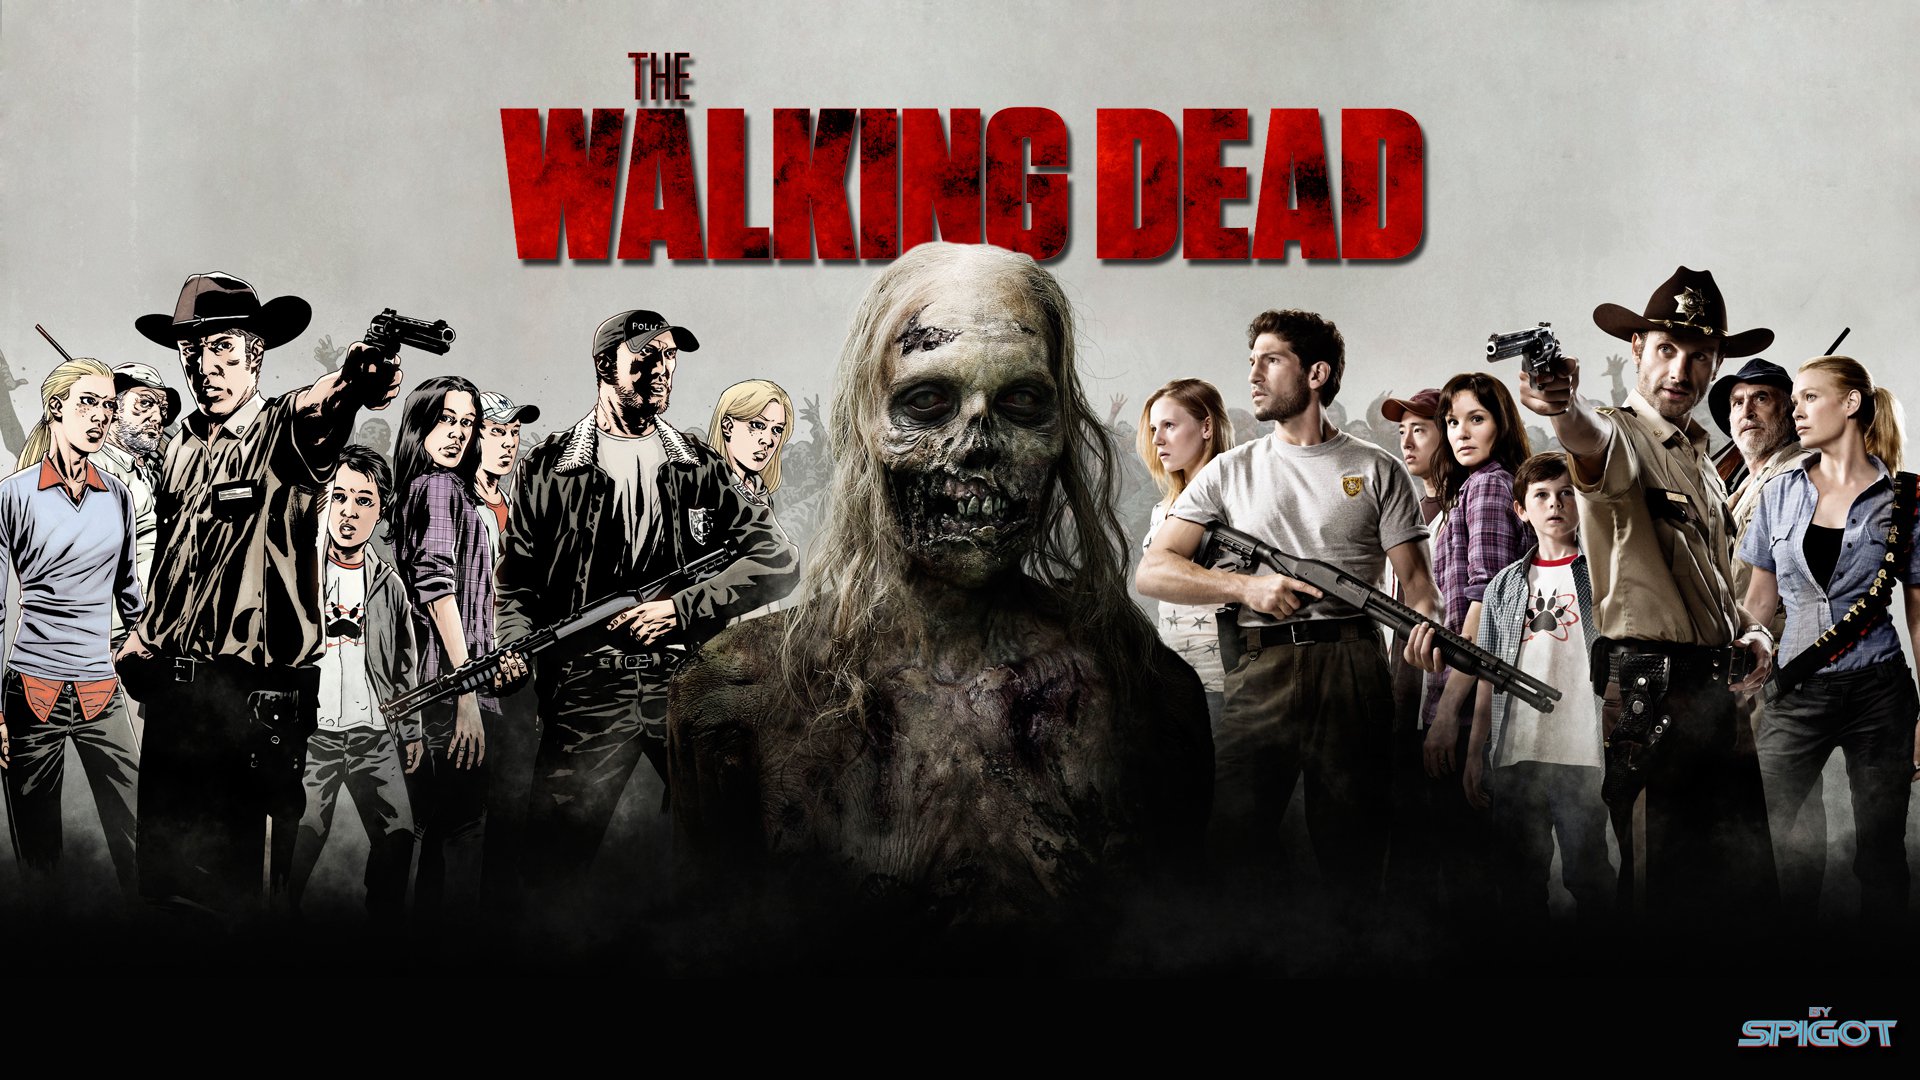 The Walking Dead Wallpaper HD Video Musical De Twd